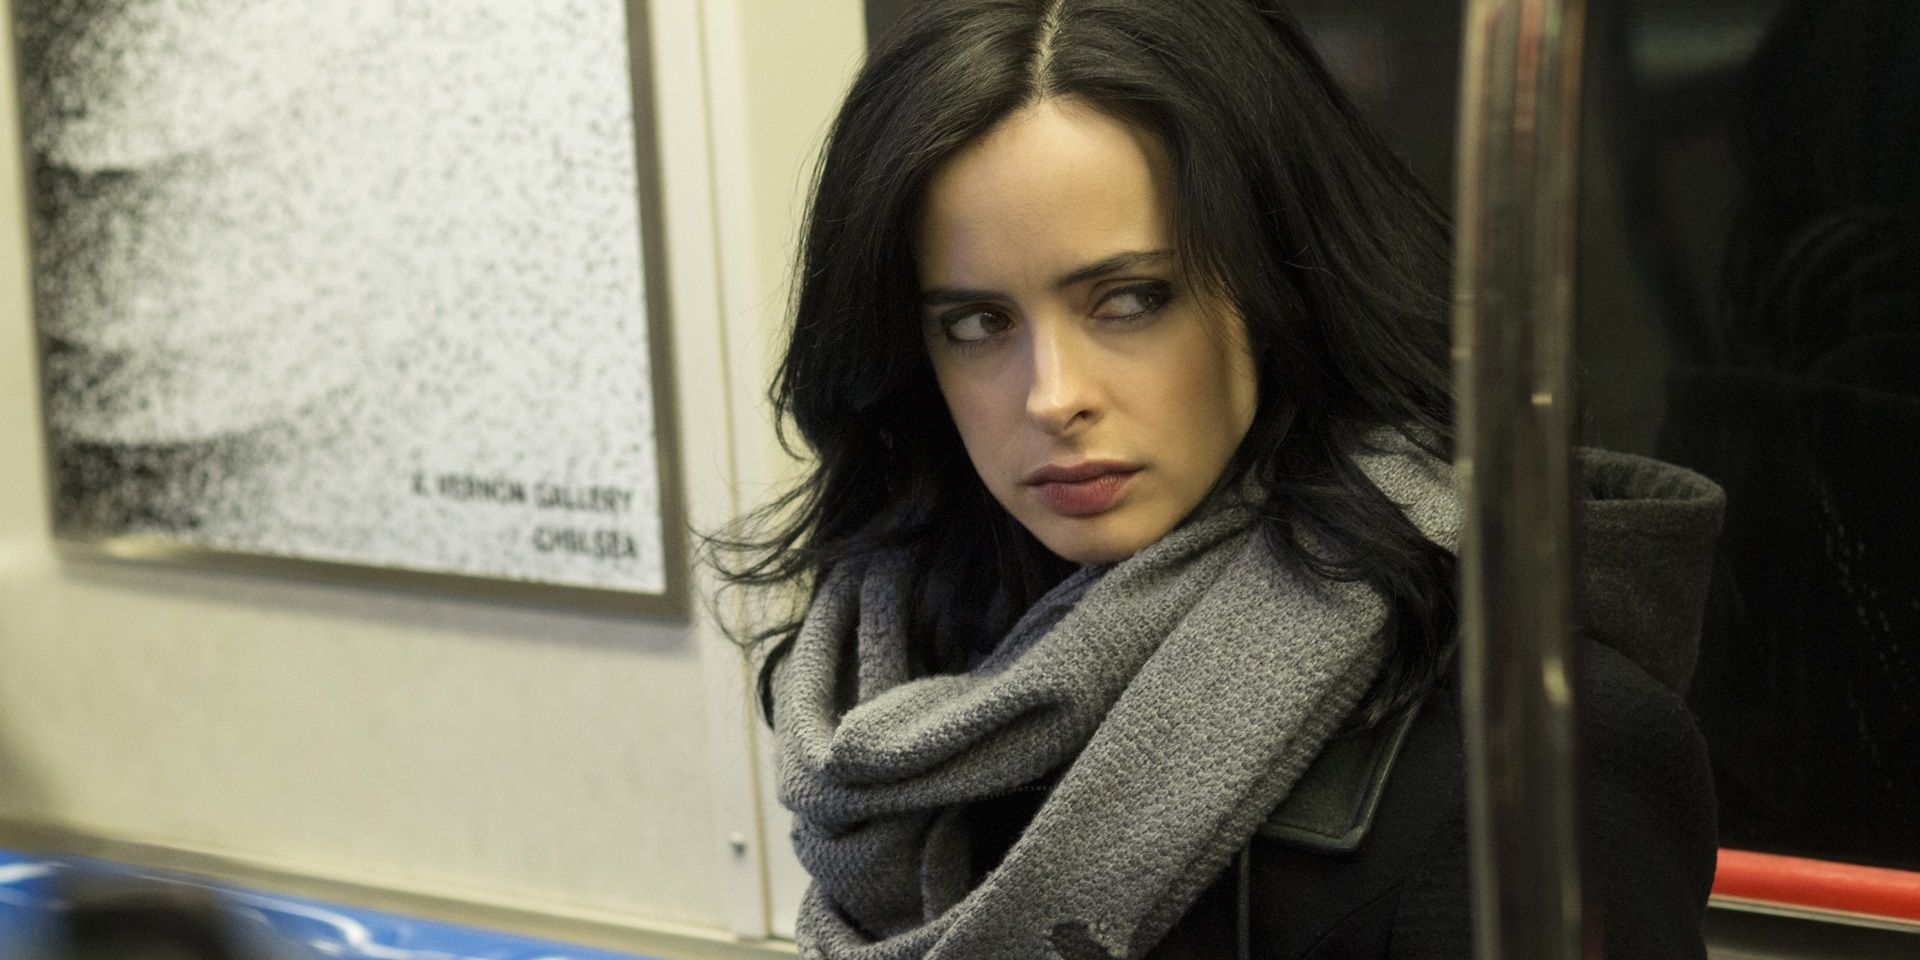 Krysten Ritter as Jessica Jones riding the subway